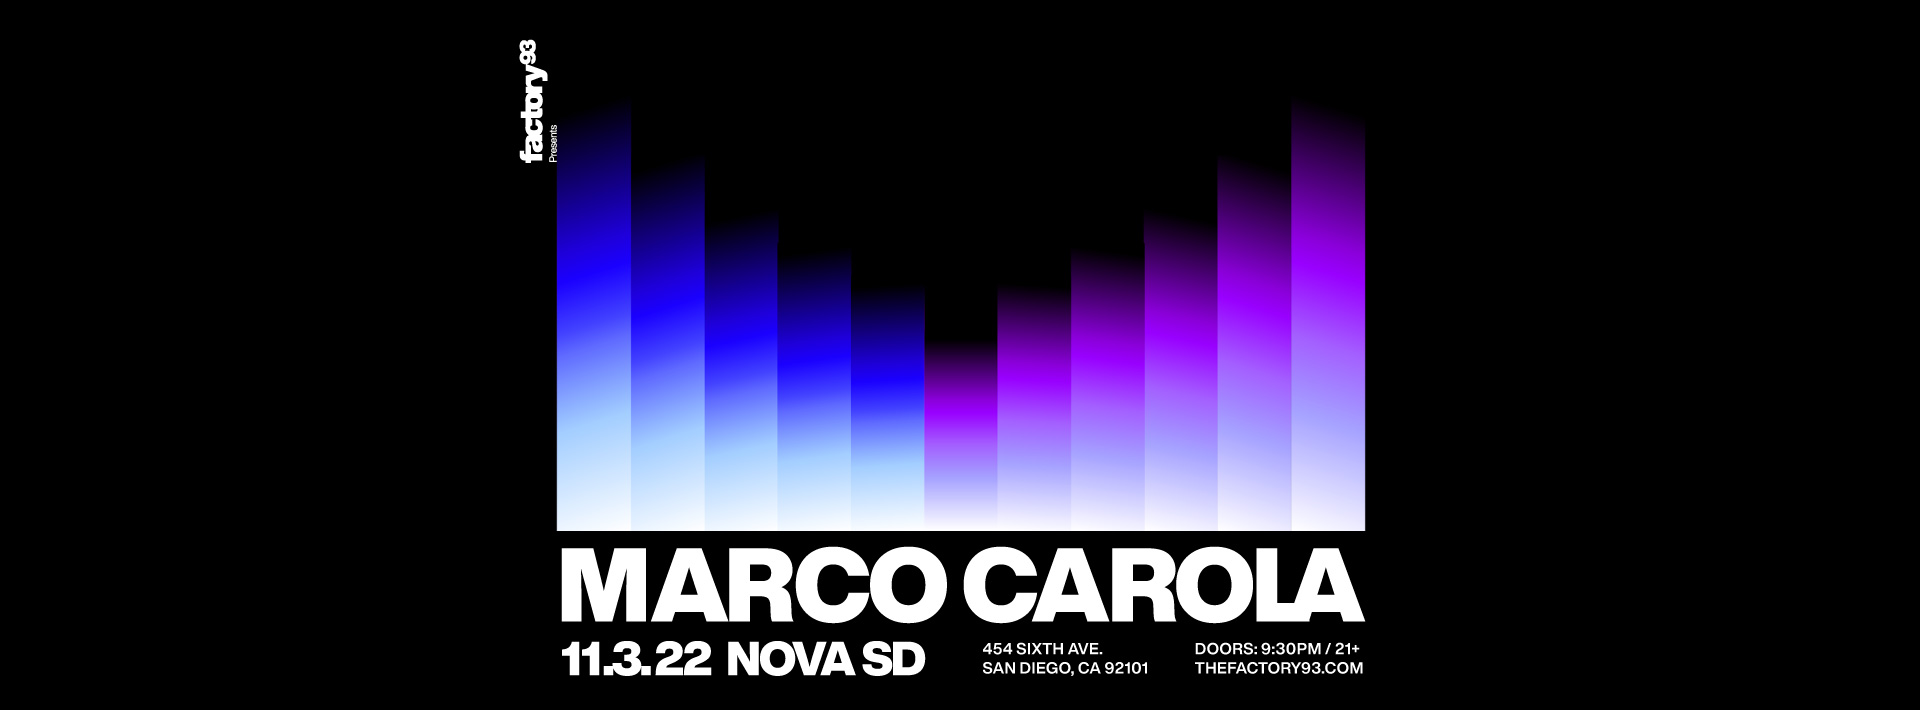 Marco Carola at NOVA SD